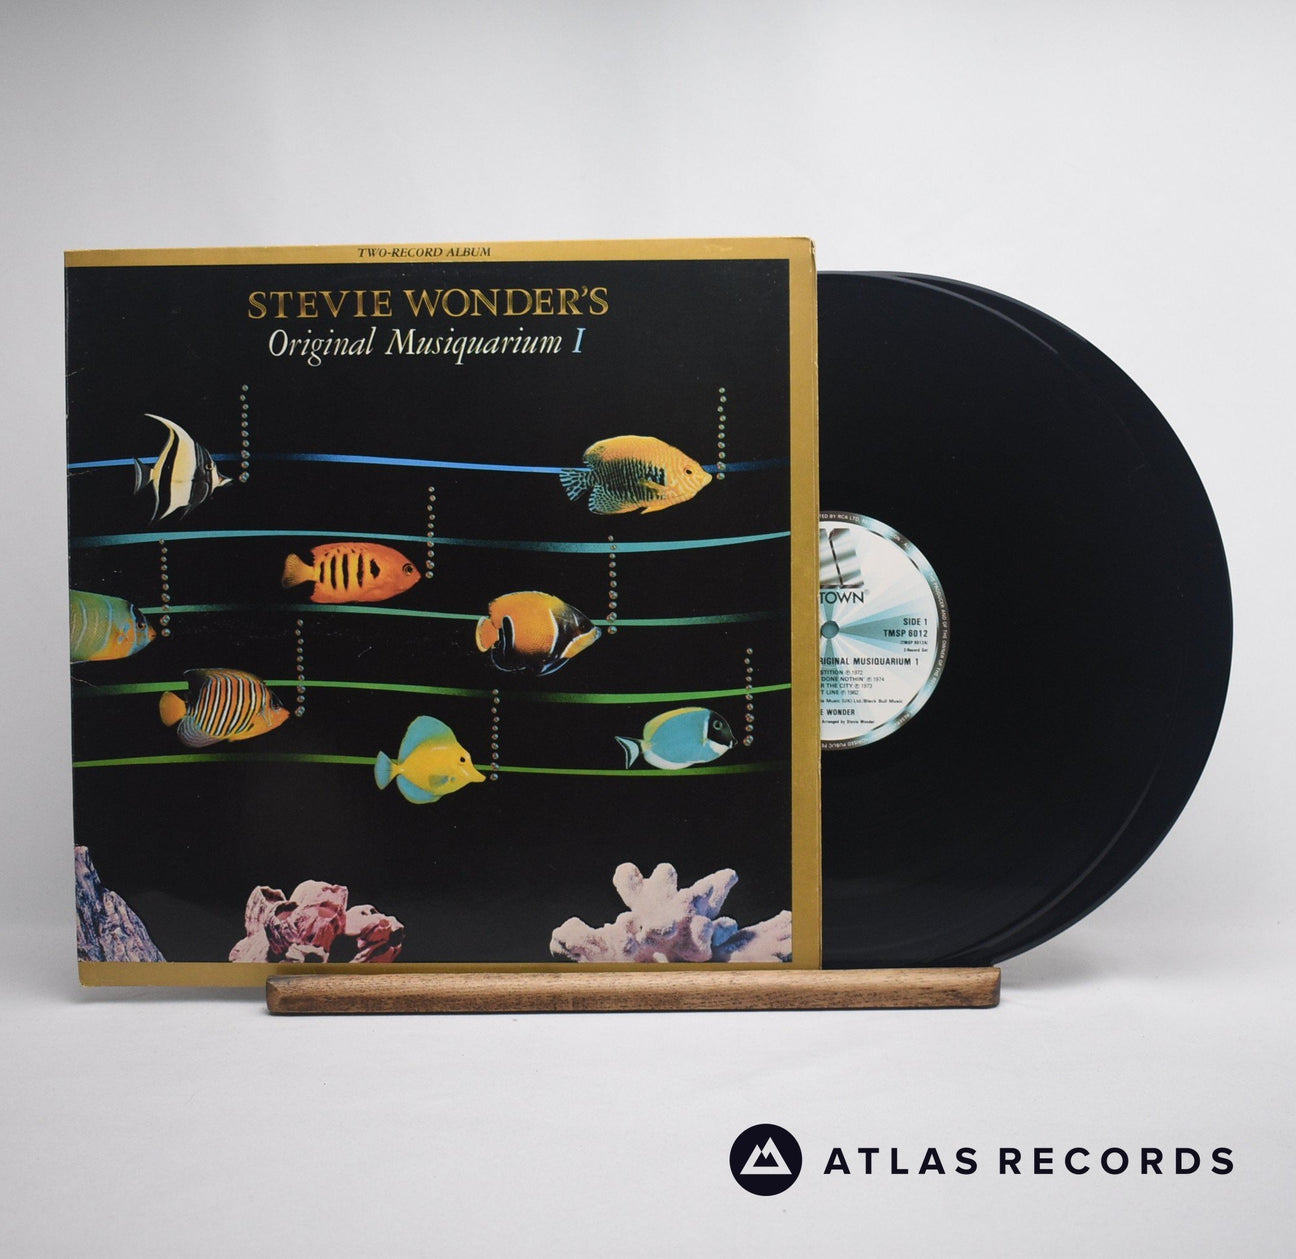 Stevie Wonder Stevie Wonder's Original Musiquarium I Double LP Vinyl Record - Front Cover & Record